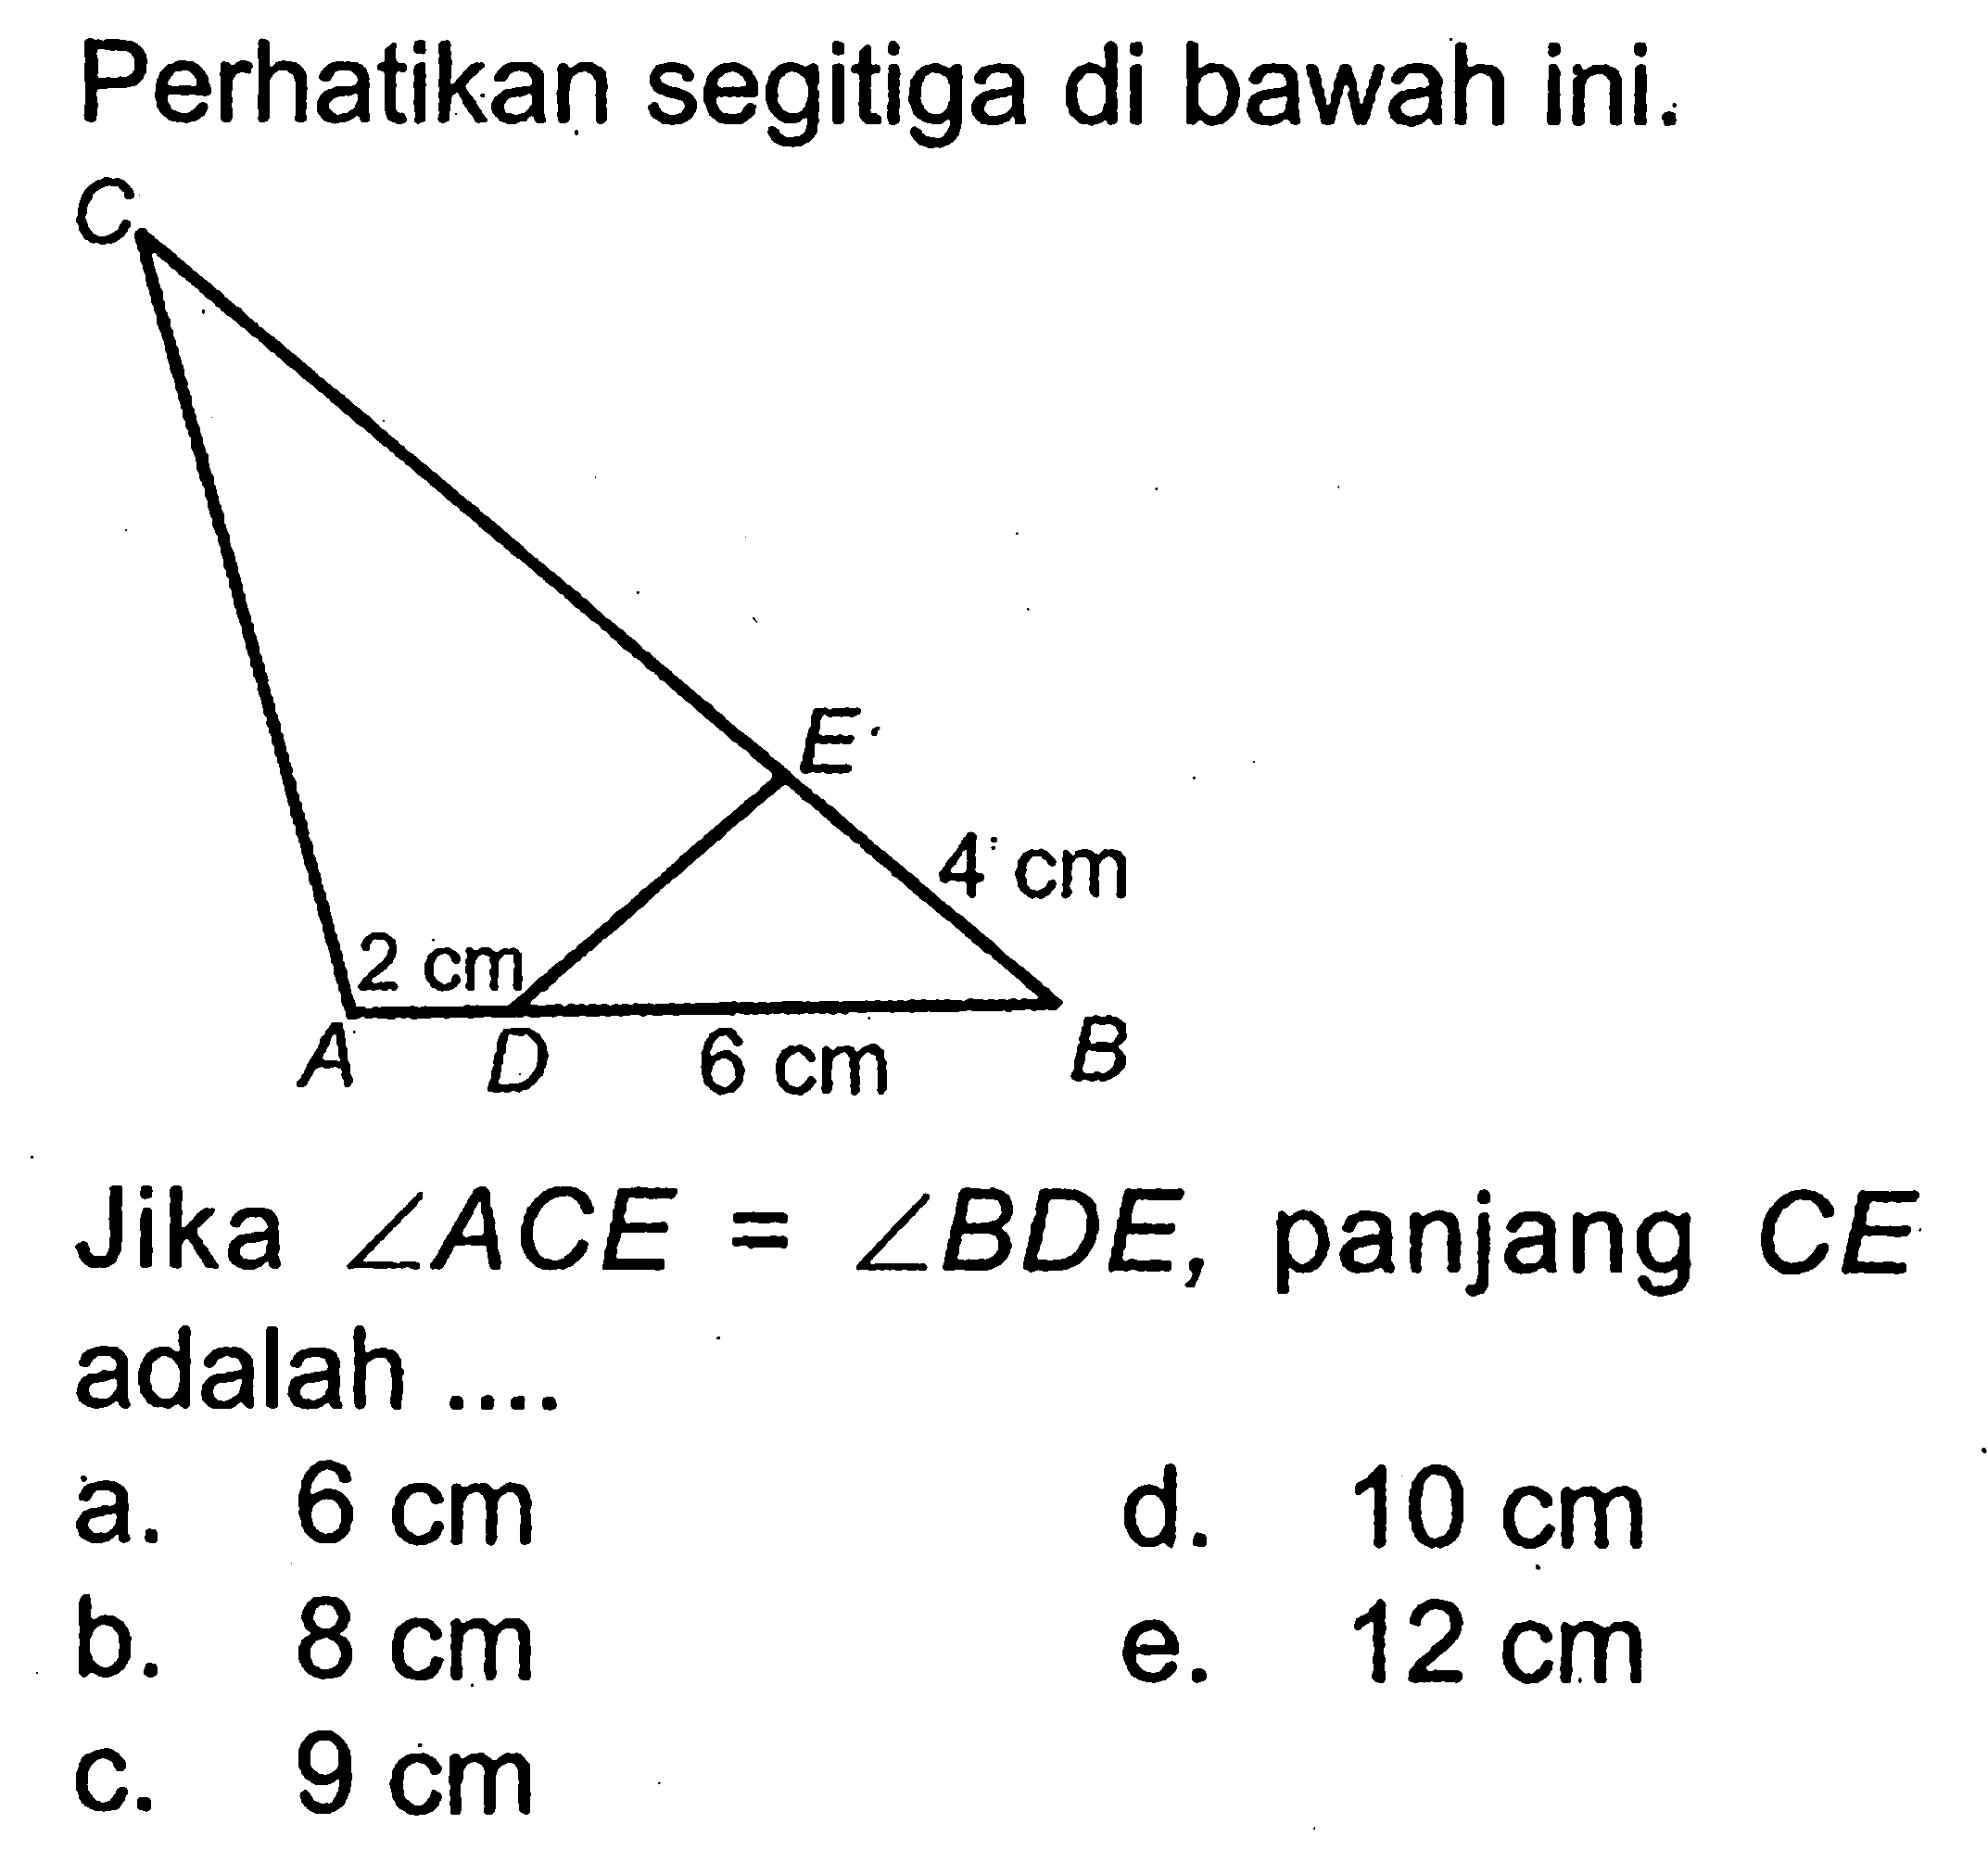 Perhatikan segitiga di bawah ini.Jika sudut ACE=sudut BDE, panjang CE adalah....